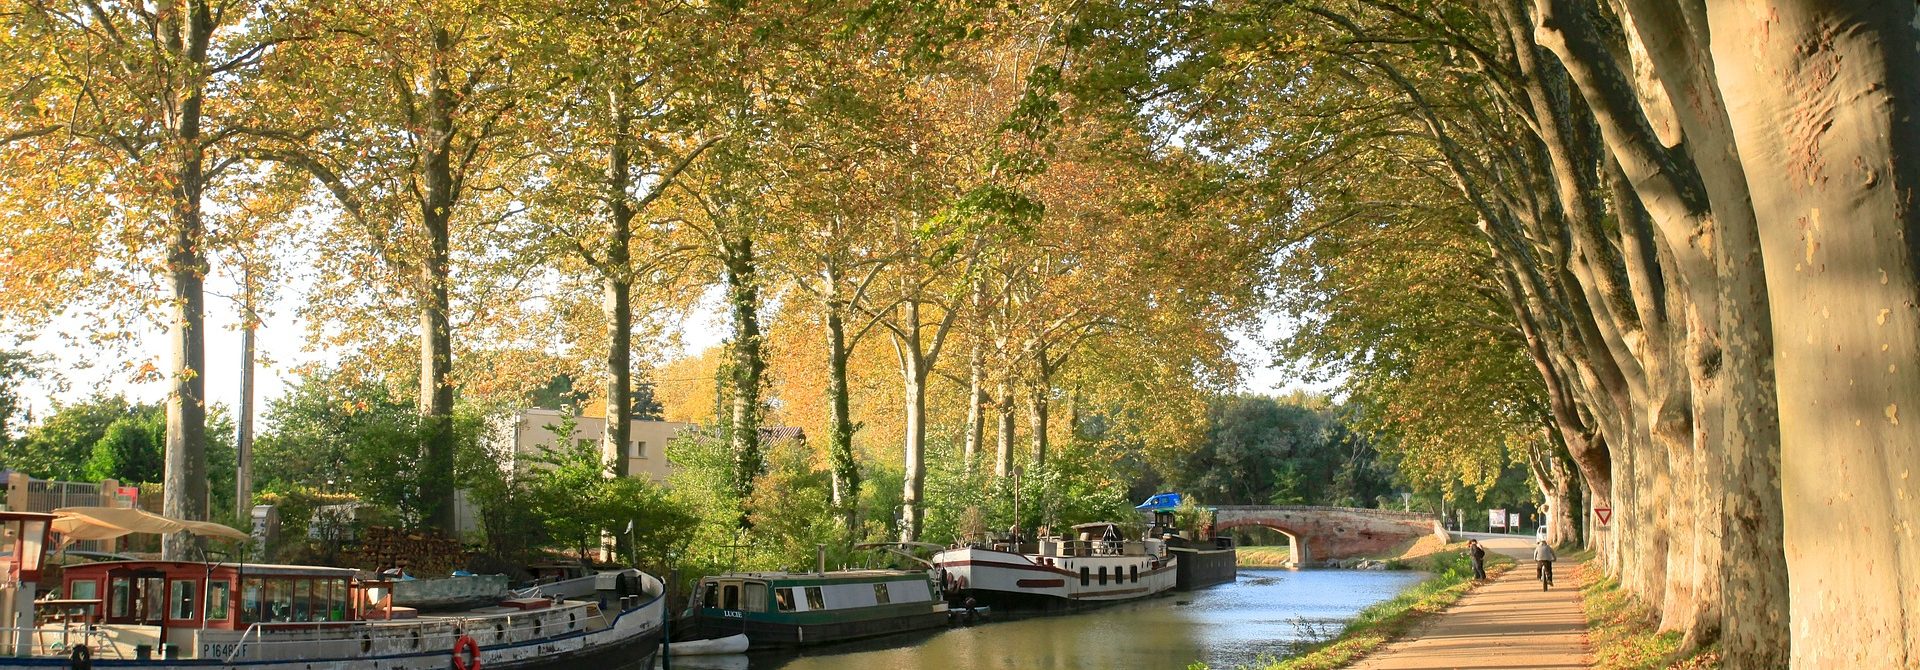 Paysage : Vue des quais du Canal du Midi, les platanes perdent leurs feuilles, il y a trois péniches sur la rive gauche